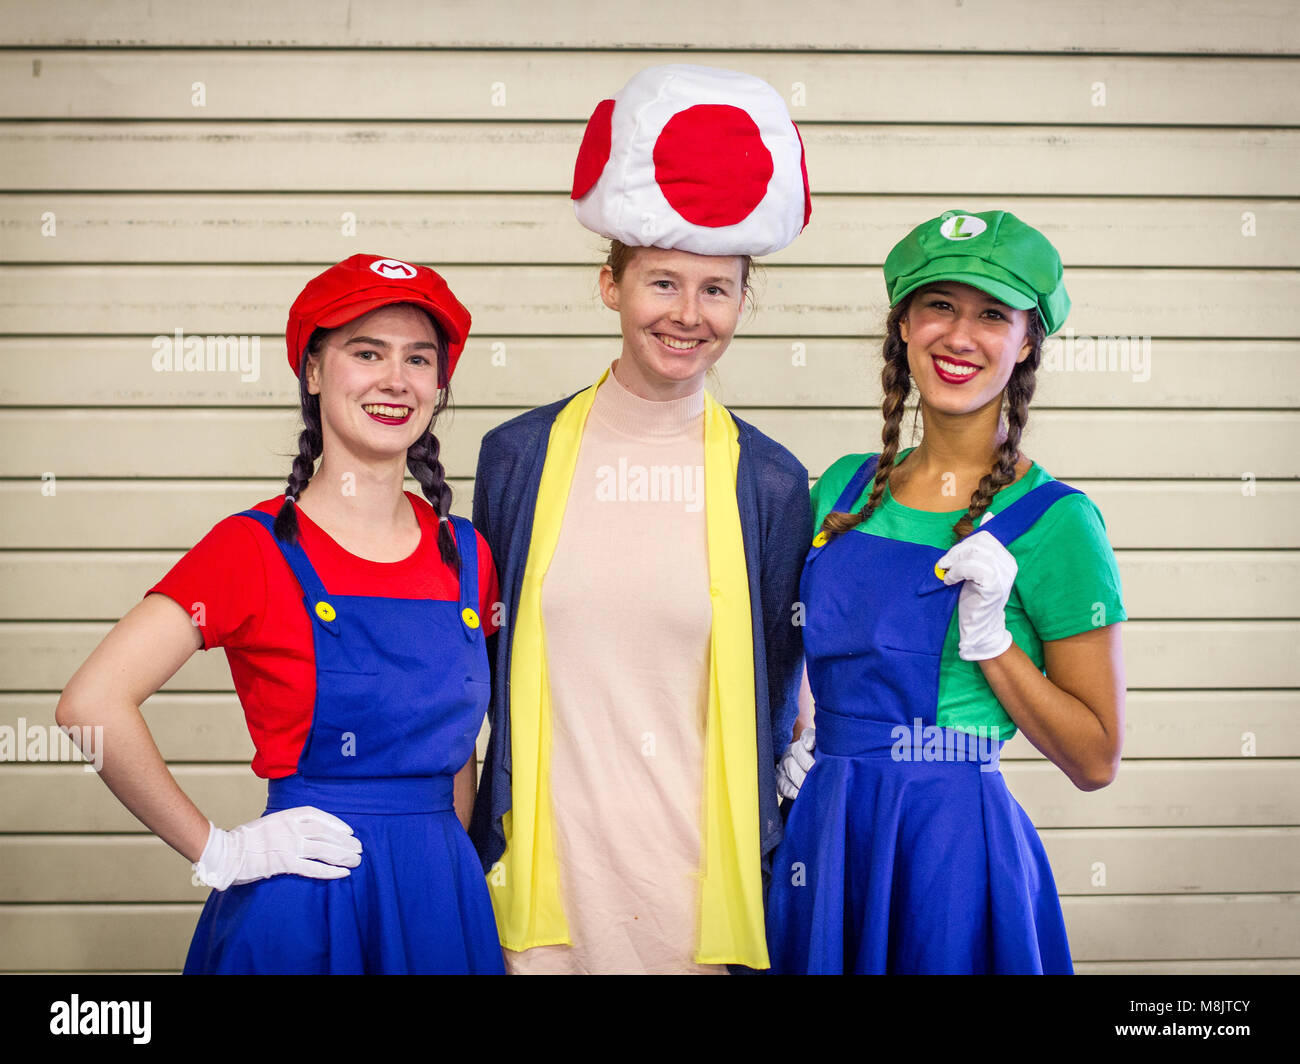 SHEFFIELD COMIC CON, Sheffield, UK, 7. Oktober 2018. Drei Cosplayer gekleidet, wie Super Mario, Luigi und ein Pilz an der Sheffield Comic Con, UK. Stockfoto